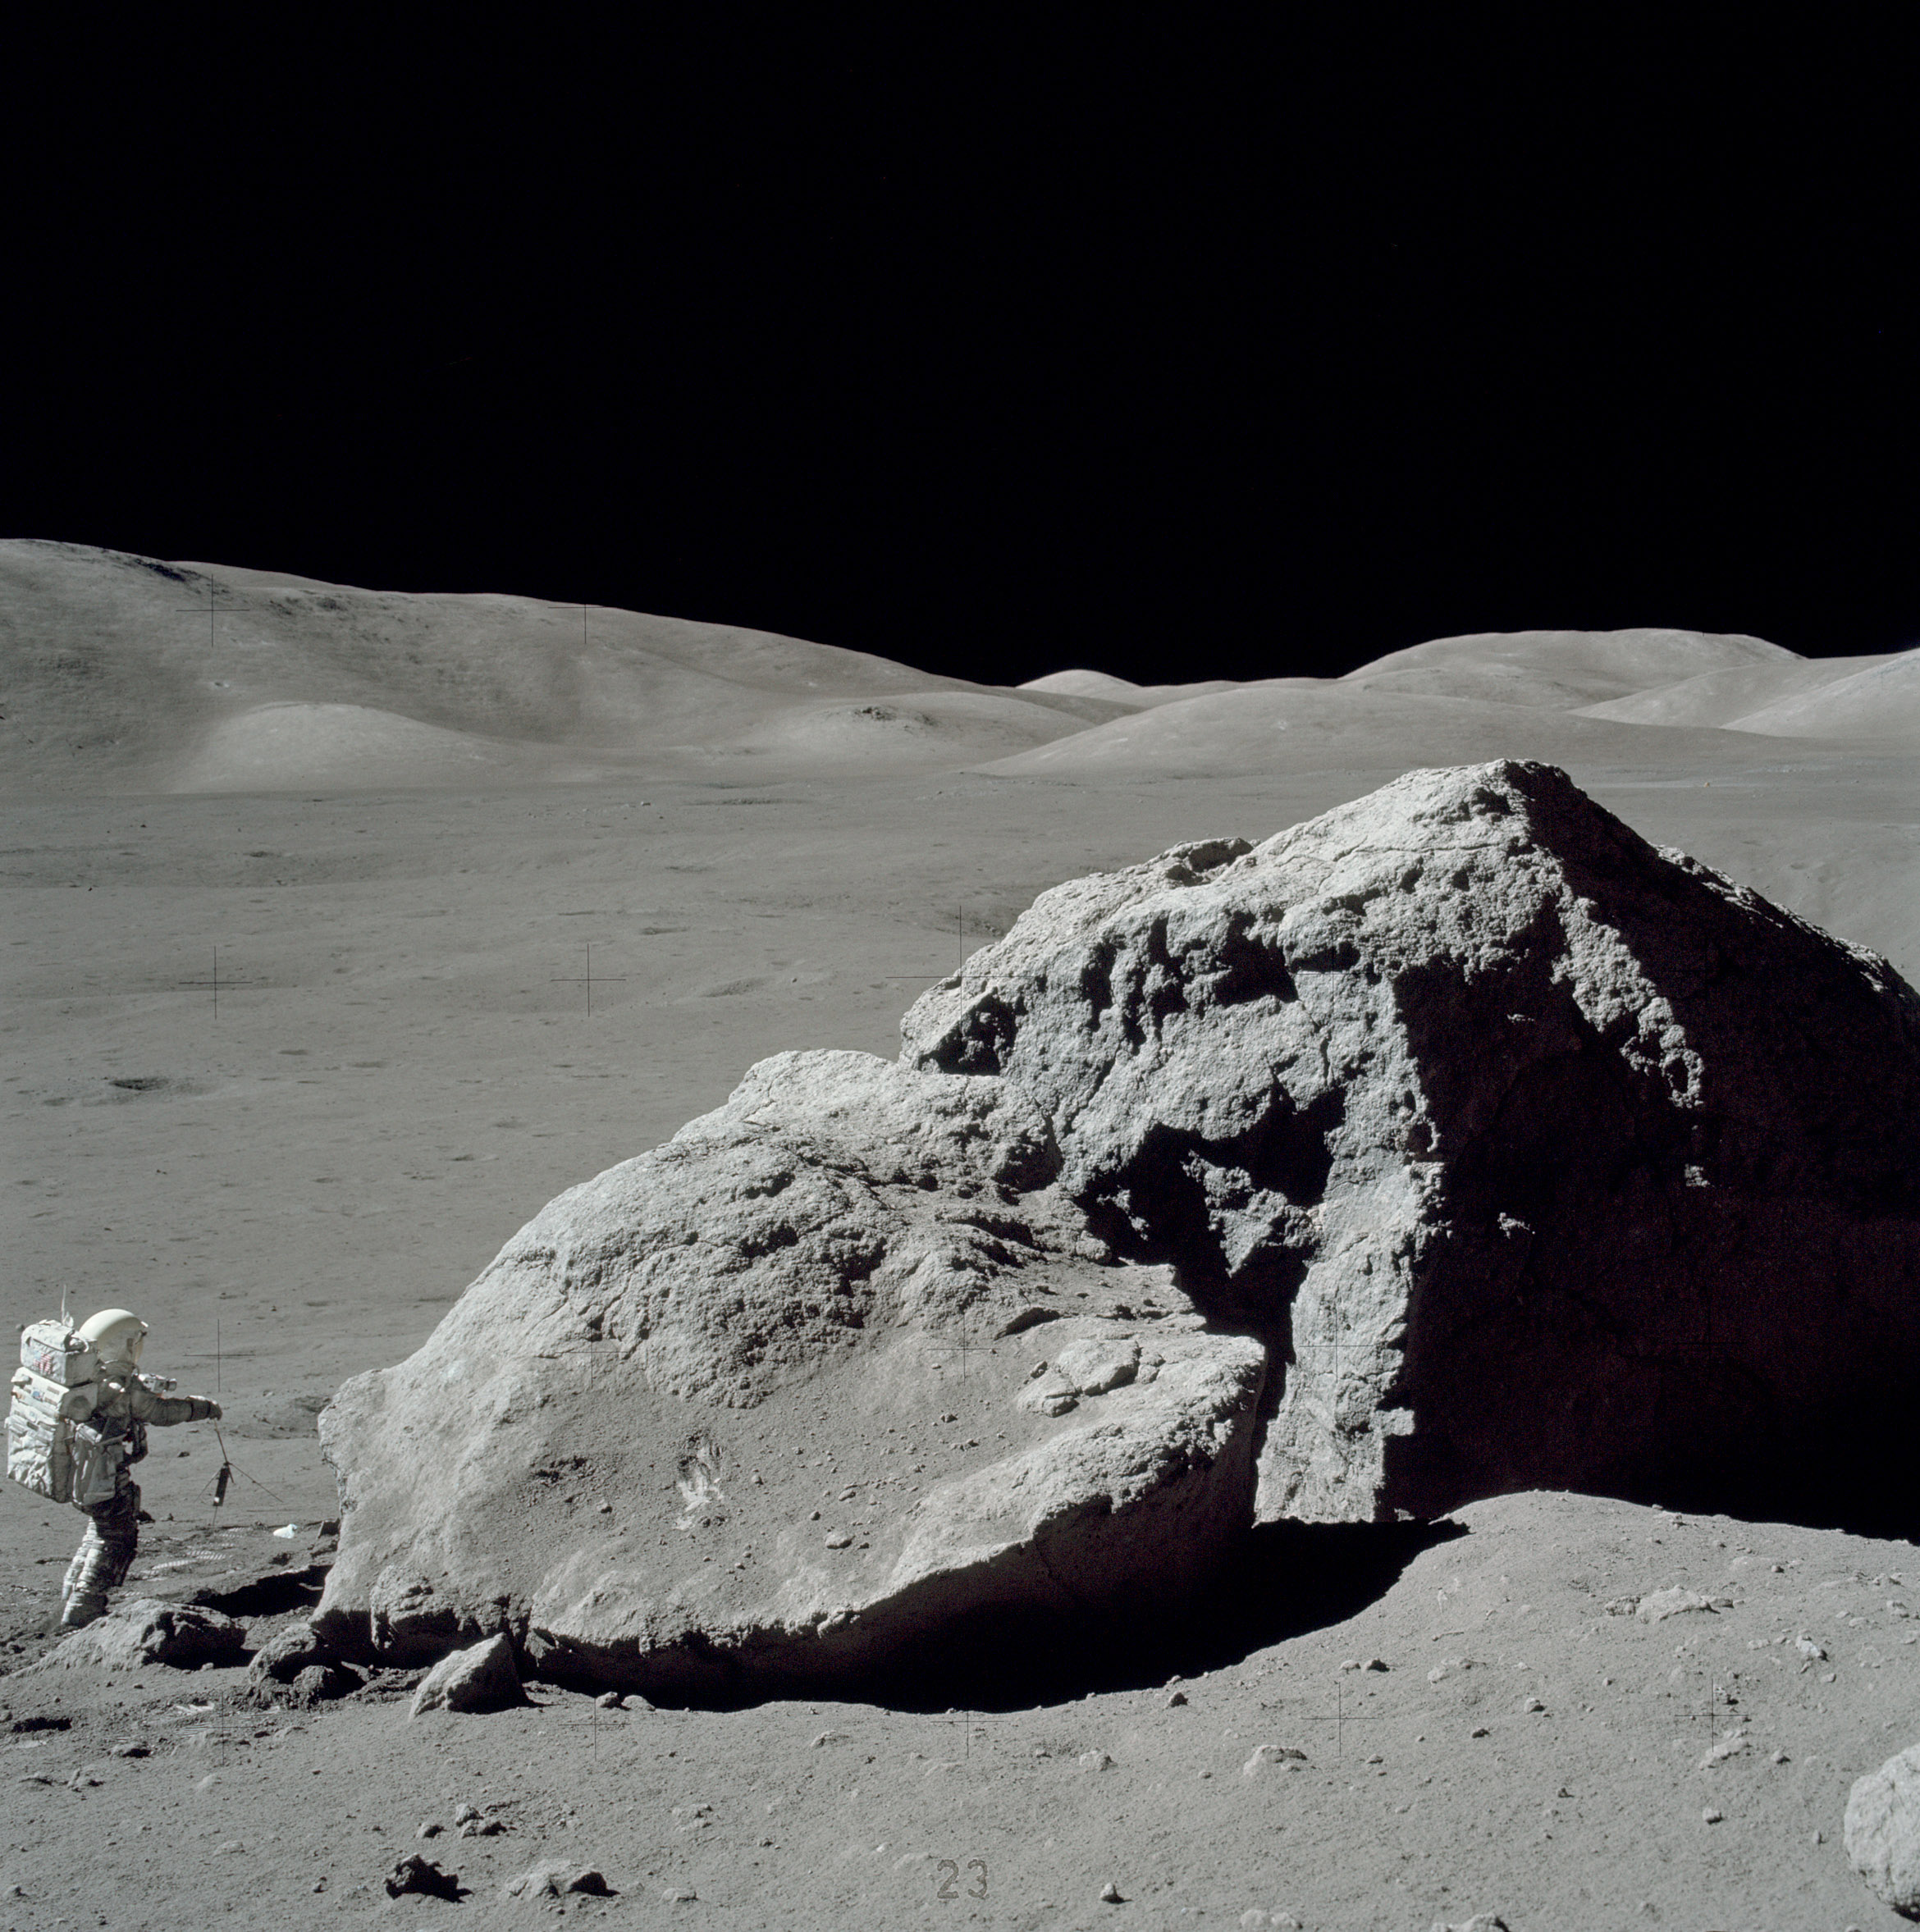 Apollo 17 station 6 boulders. NASA/Eugene Cernan photo